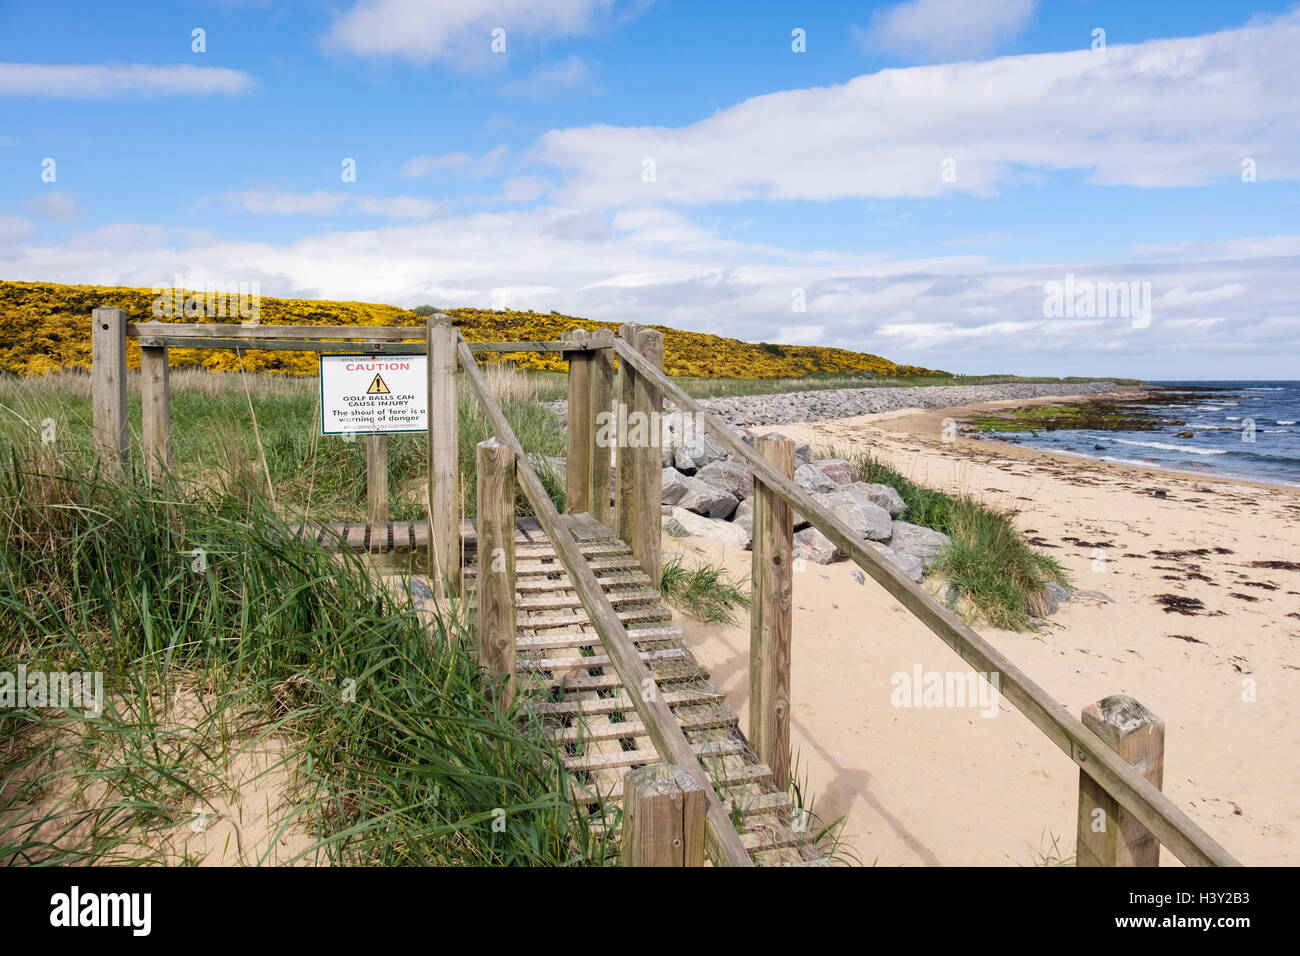 Attention attention les promeneurs sur sentier ramp de plage pour Royal Dornoch Golf Club. Dornoch Sutherland Highland Scotland UK Banque D'Images